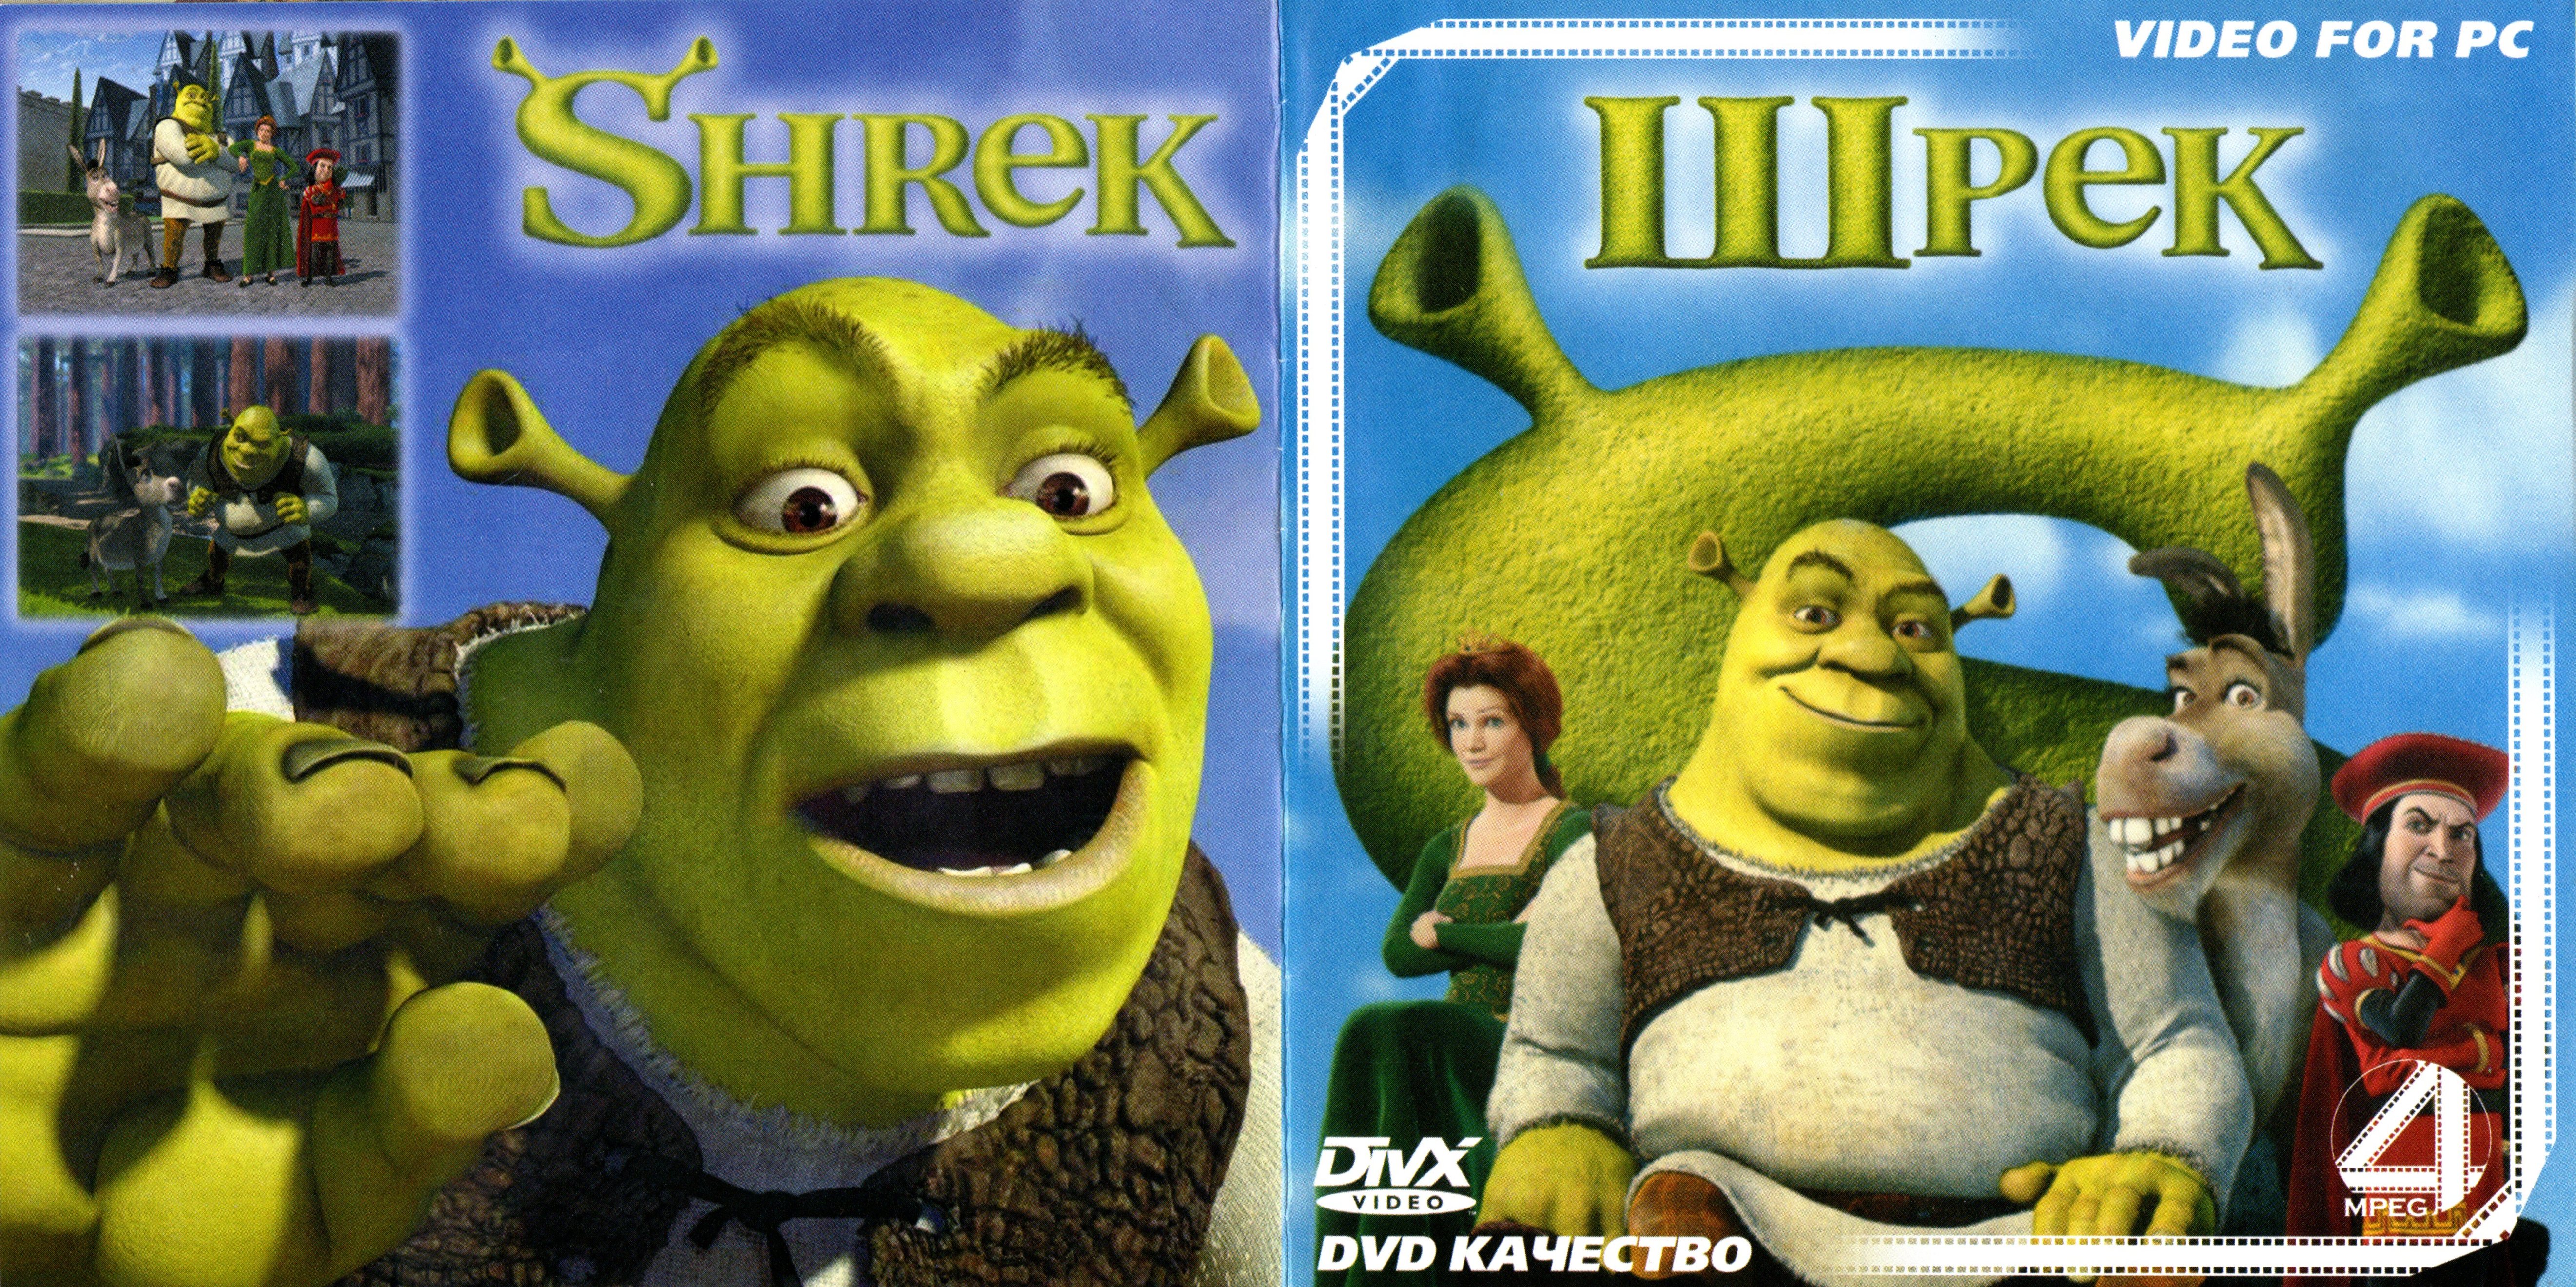 Shrek 2 factory workers